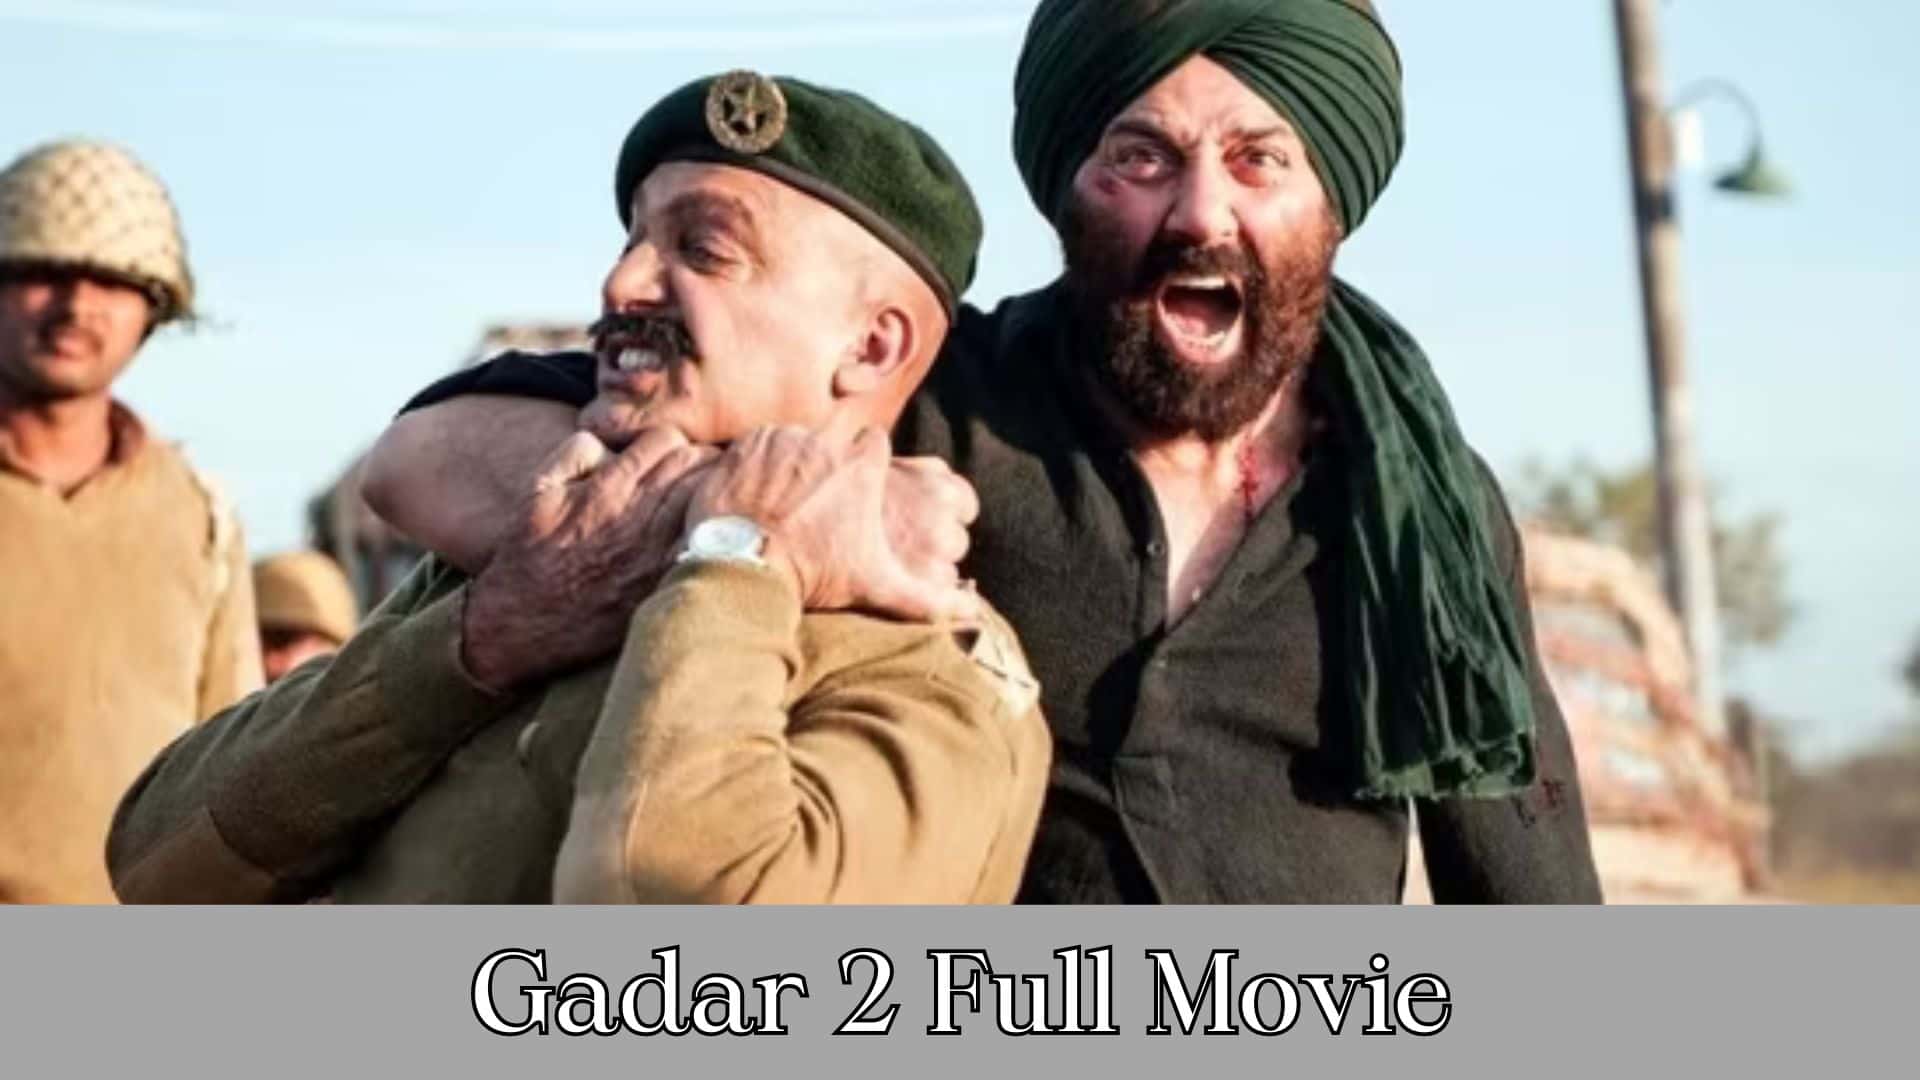 Gadar 2 Full Movie Download Filmy4wap Mp4moviez Download 480p 720p 180p